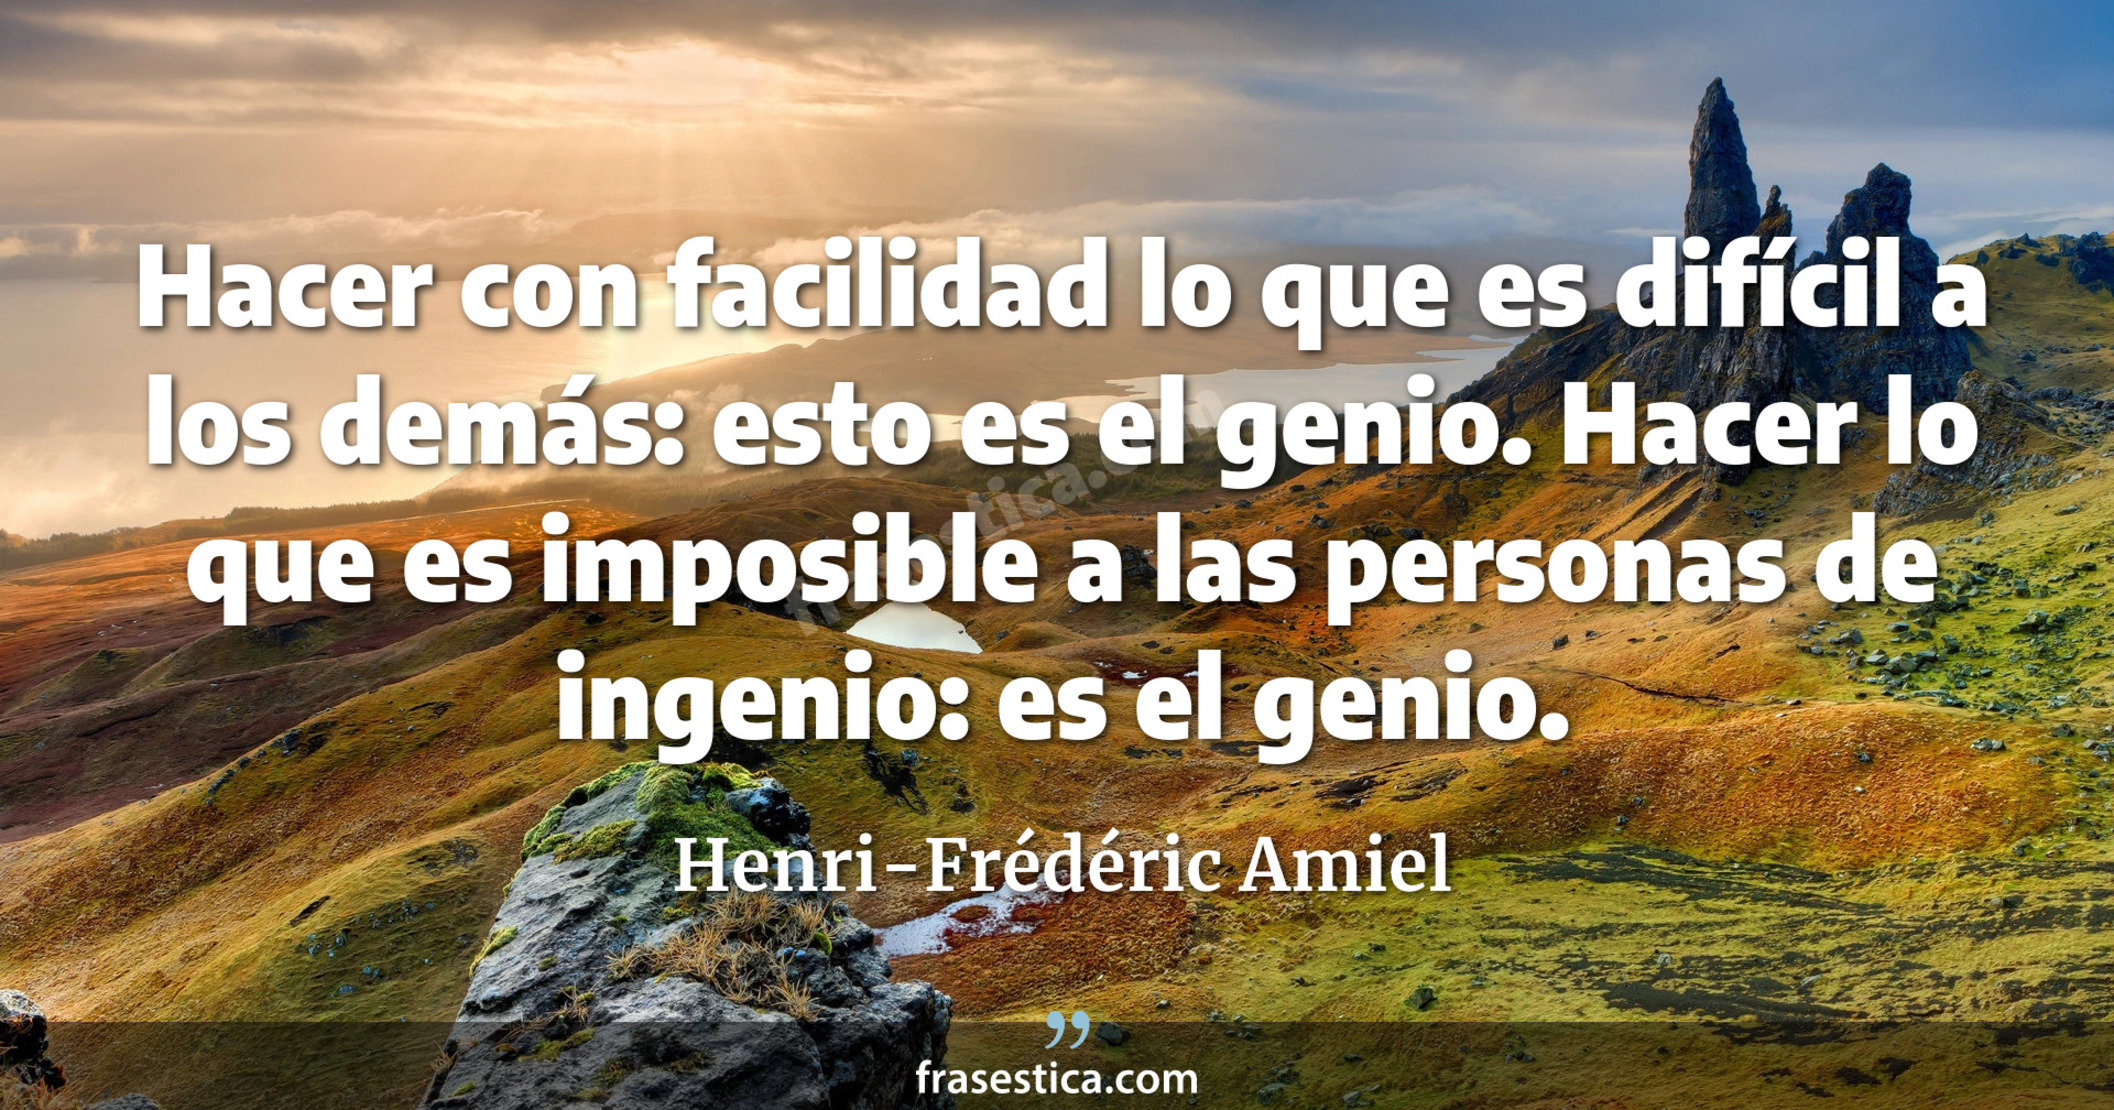 Hacer con facilidad lo que es difícil a los demás: esto es el genio. Hacer lo que es imposible a las personas de ingenio: es el genio. - Henri-Frédéric Amiel